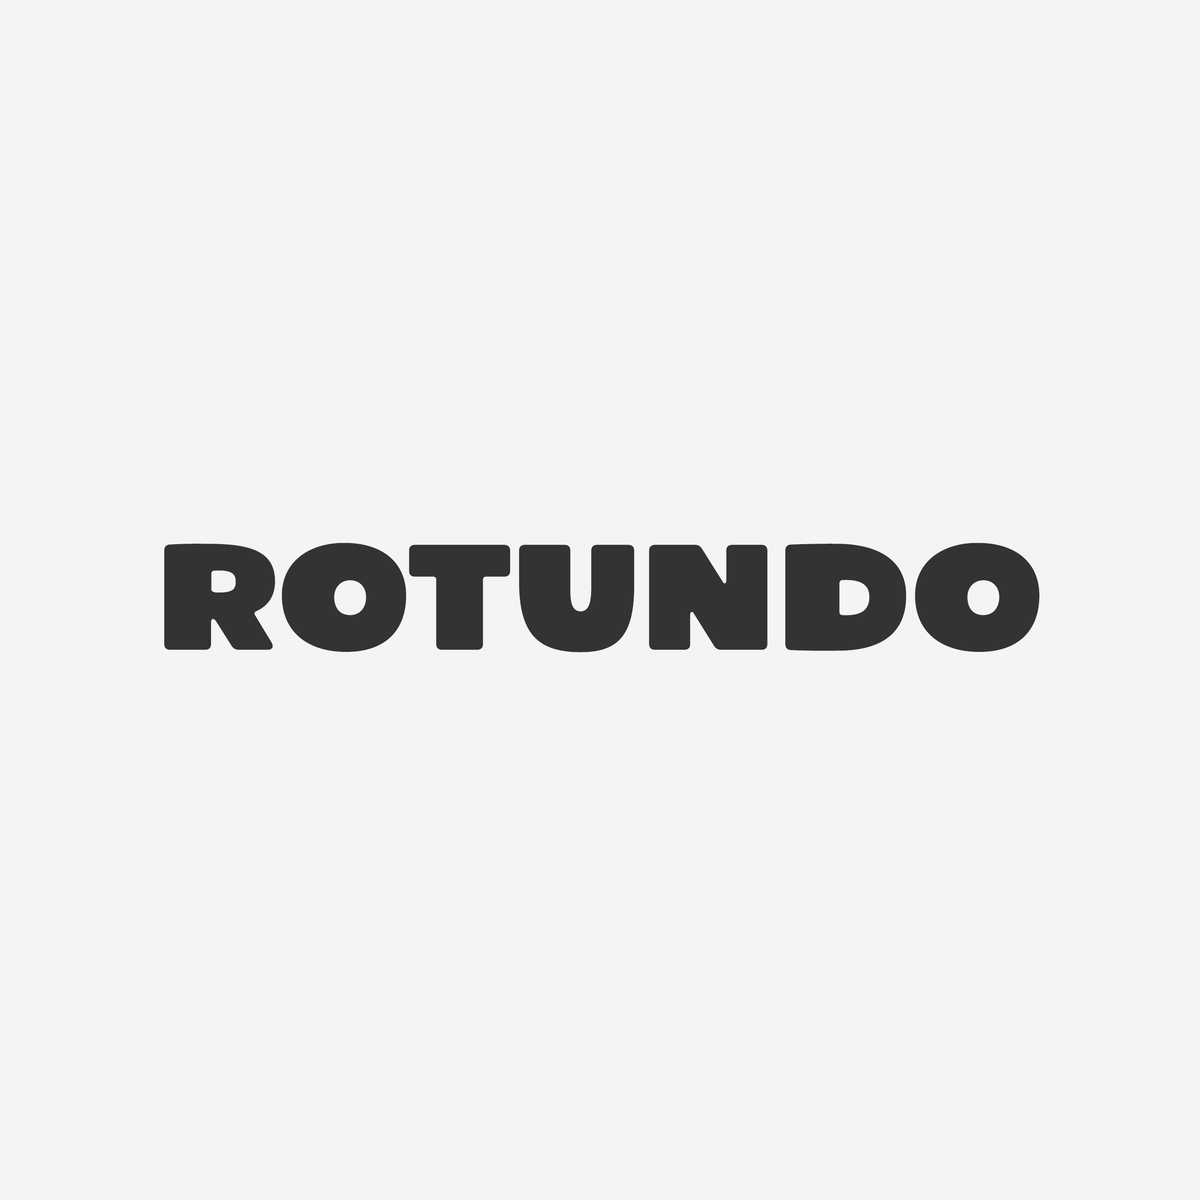 Rotundo